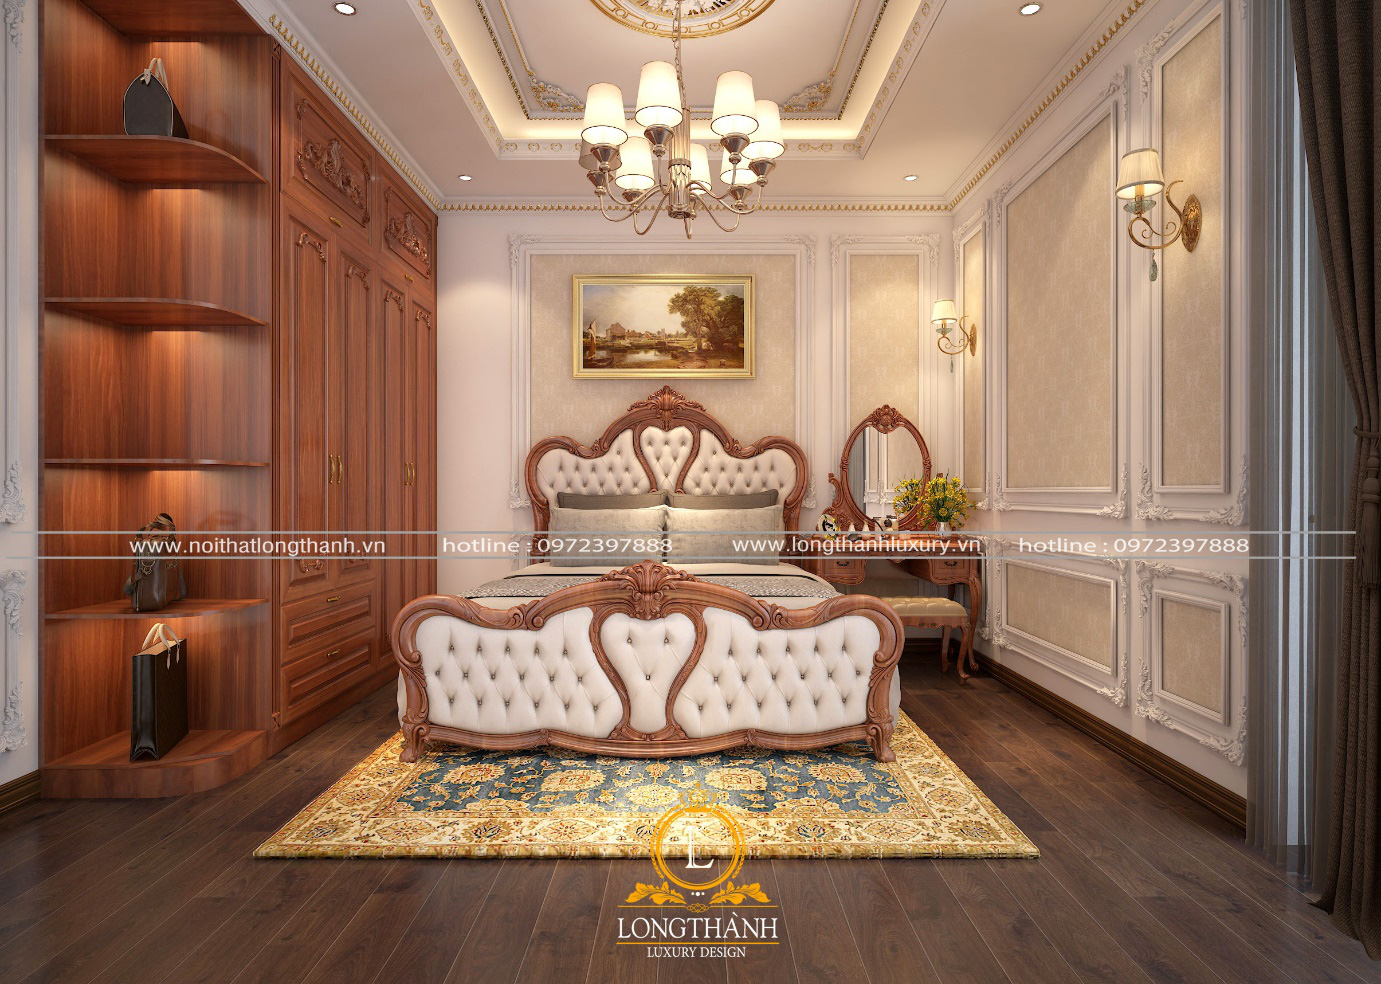 Nội Thất Long Thành – Kiến tạo vẻ đẹp hoàn mỹ cho ngôi nhà của bạn - Ảnh 2.